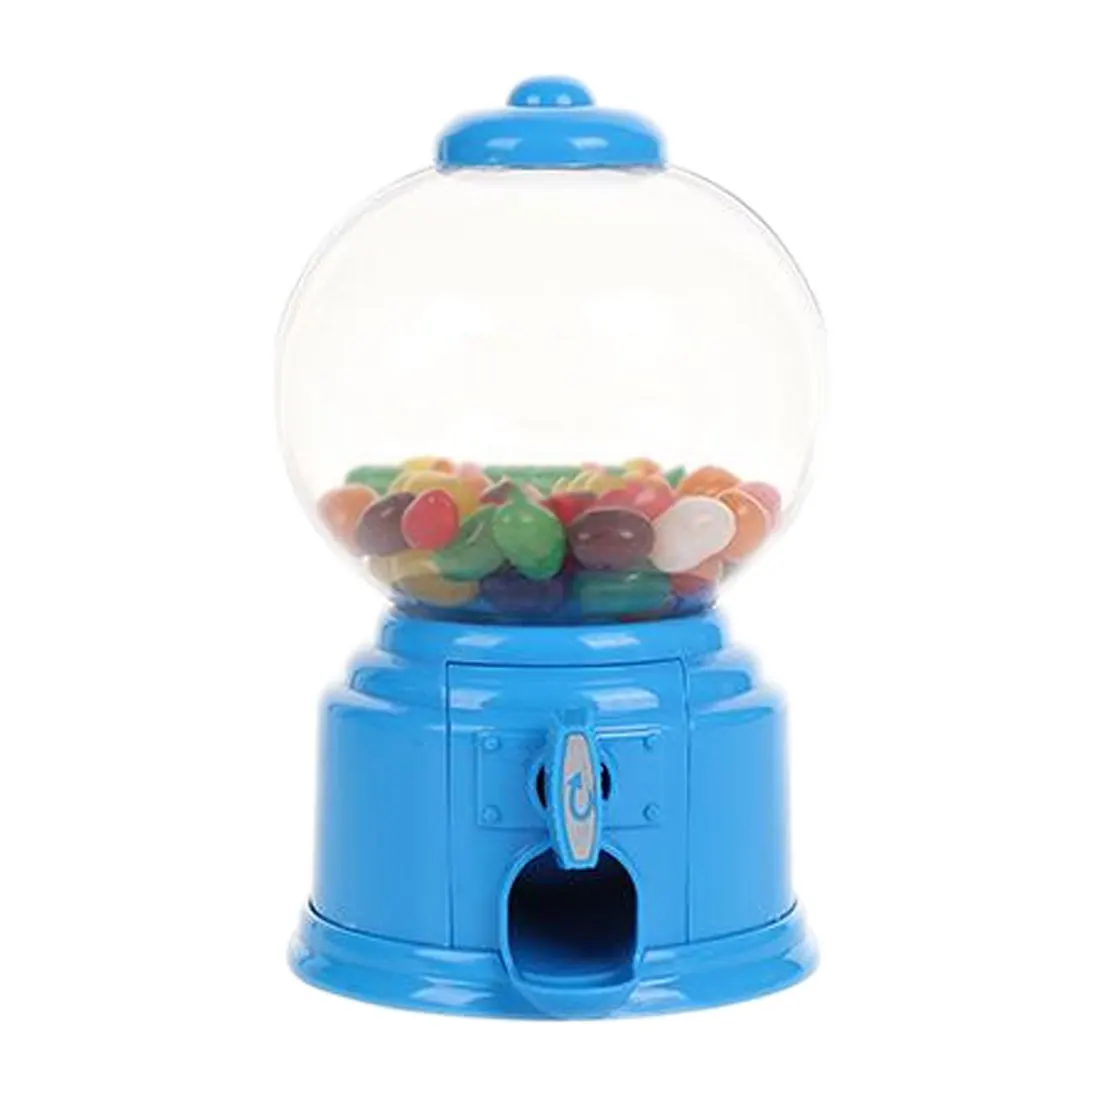 Мини конфеты машина пузырьковый аппарат для продажи жевательных резинок-шариков монета банк детские игрушки складская цена Рождественский подарок на день рождения - Цвет: Синий